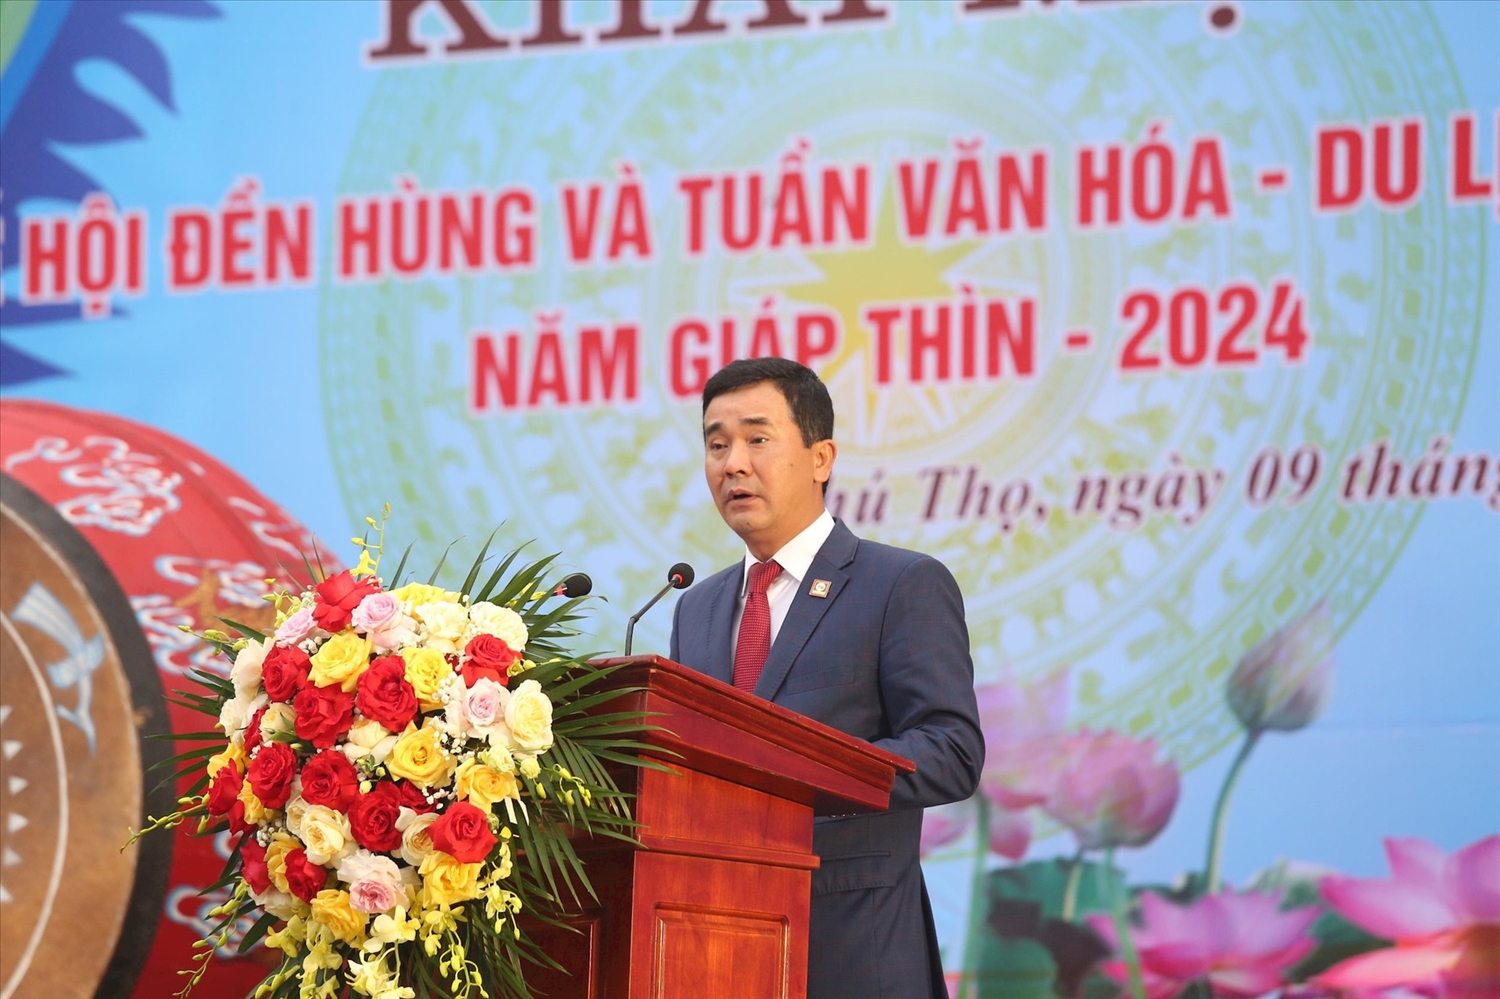 Phó Chủ tịch UBND tỉnh Hồ Đại Dũng phát biểu khai mạc Lễ hội Đền Hùng và Tuần Văn hóa- Du lịch Đất Tổ năm Giáp Thìn 2024.